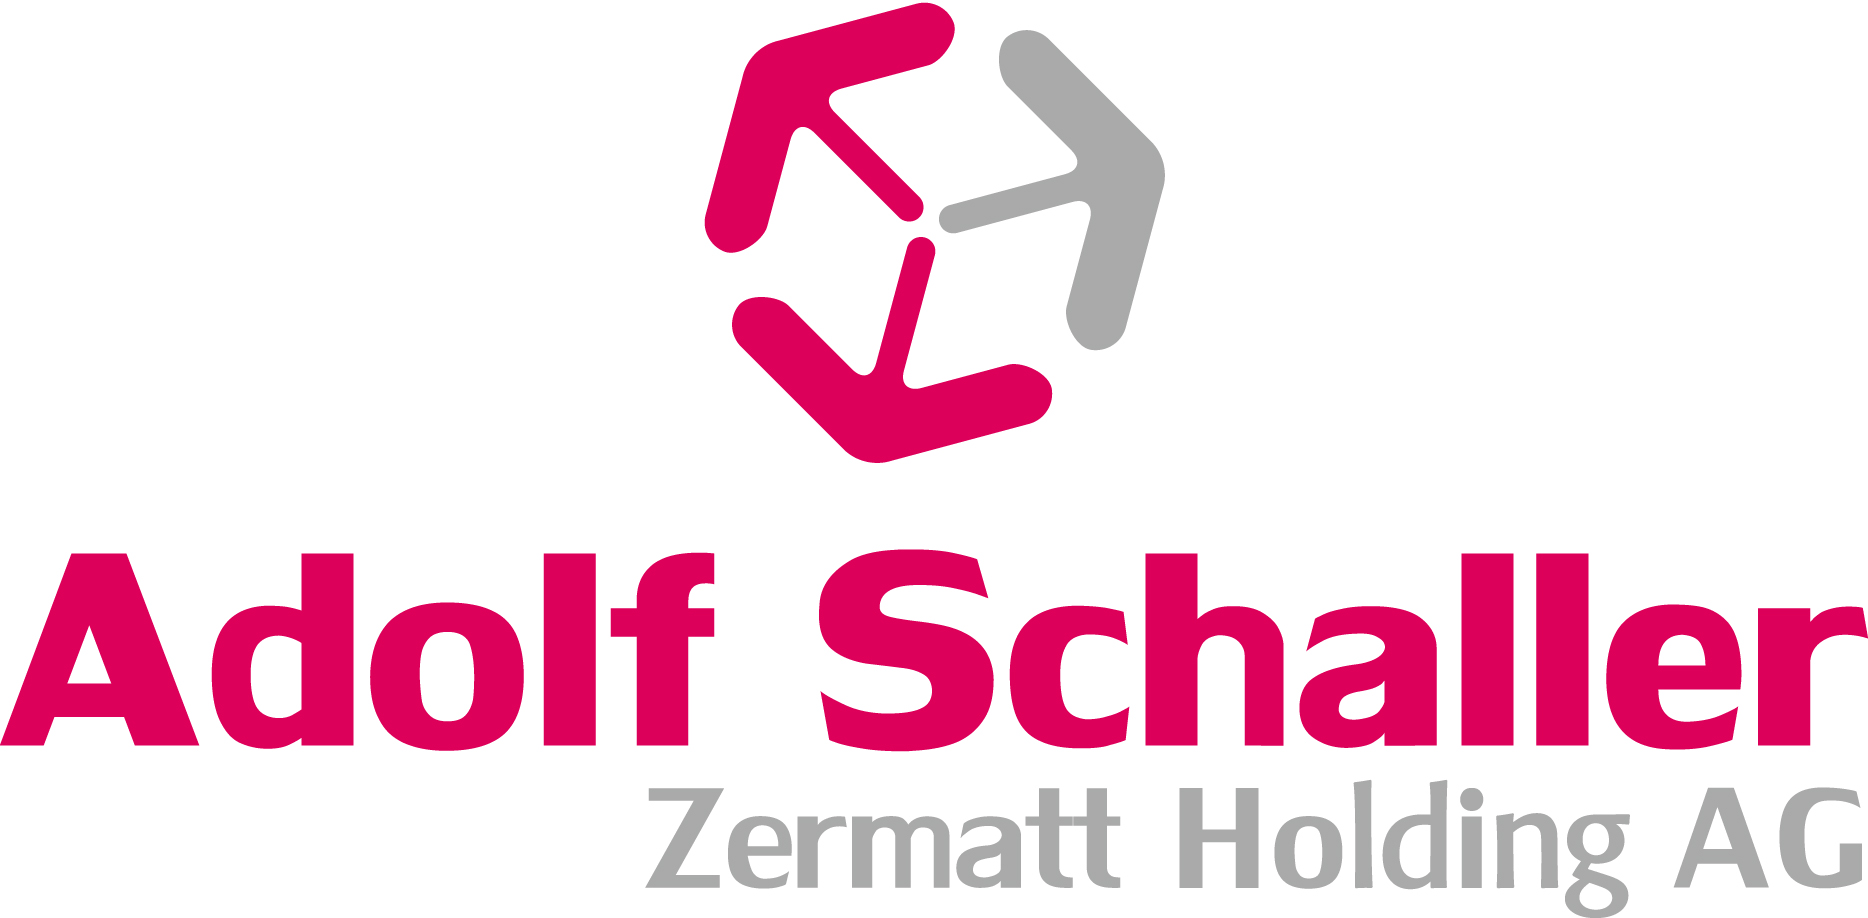 Adolf Schaller Zermatt Holding AG